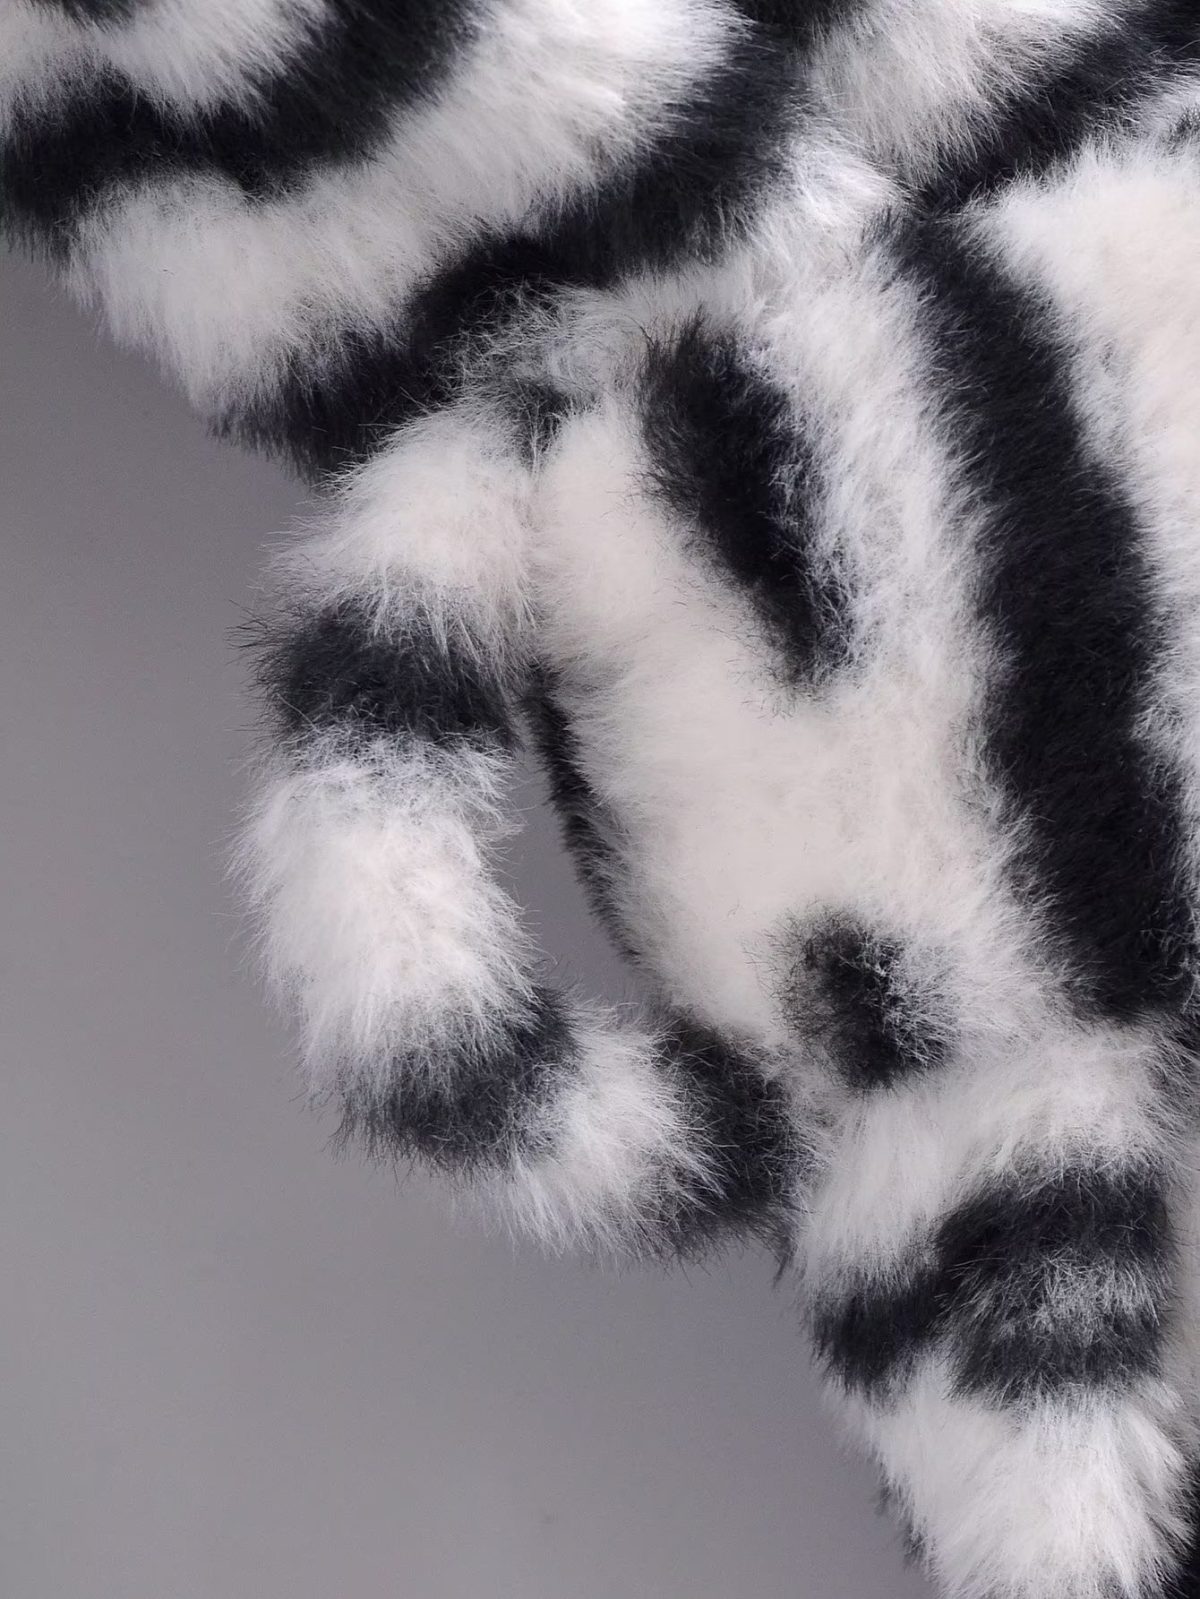 Elegant Graceful Faux Rabbit Fur Striped Coat - Coats & Jackets - Uniqistic.com